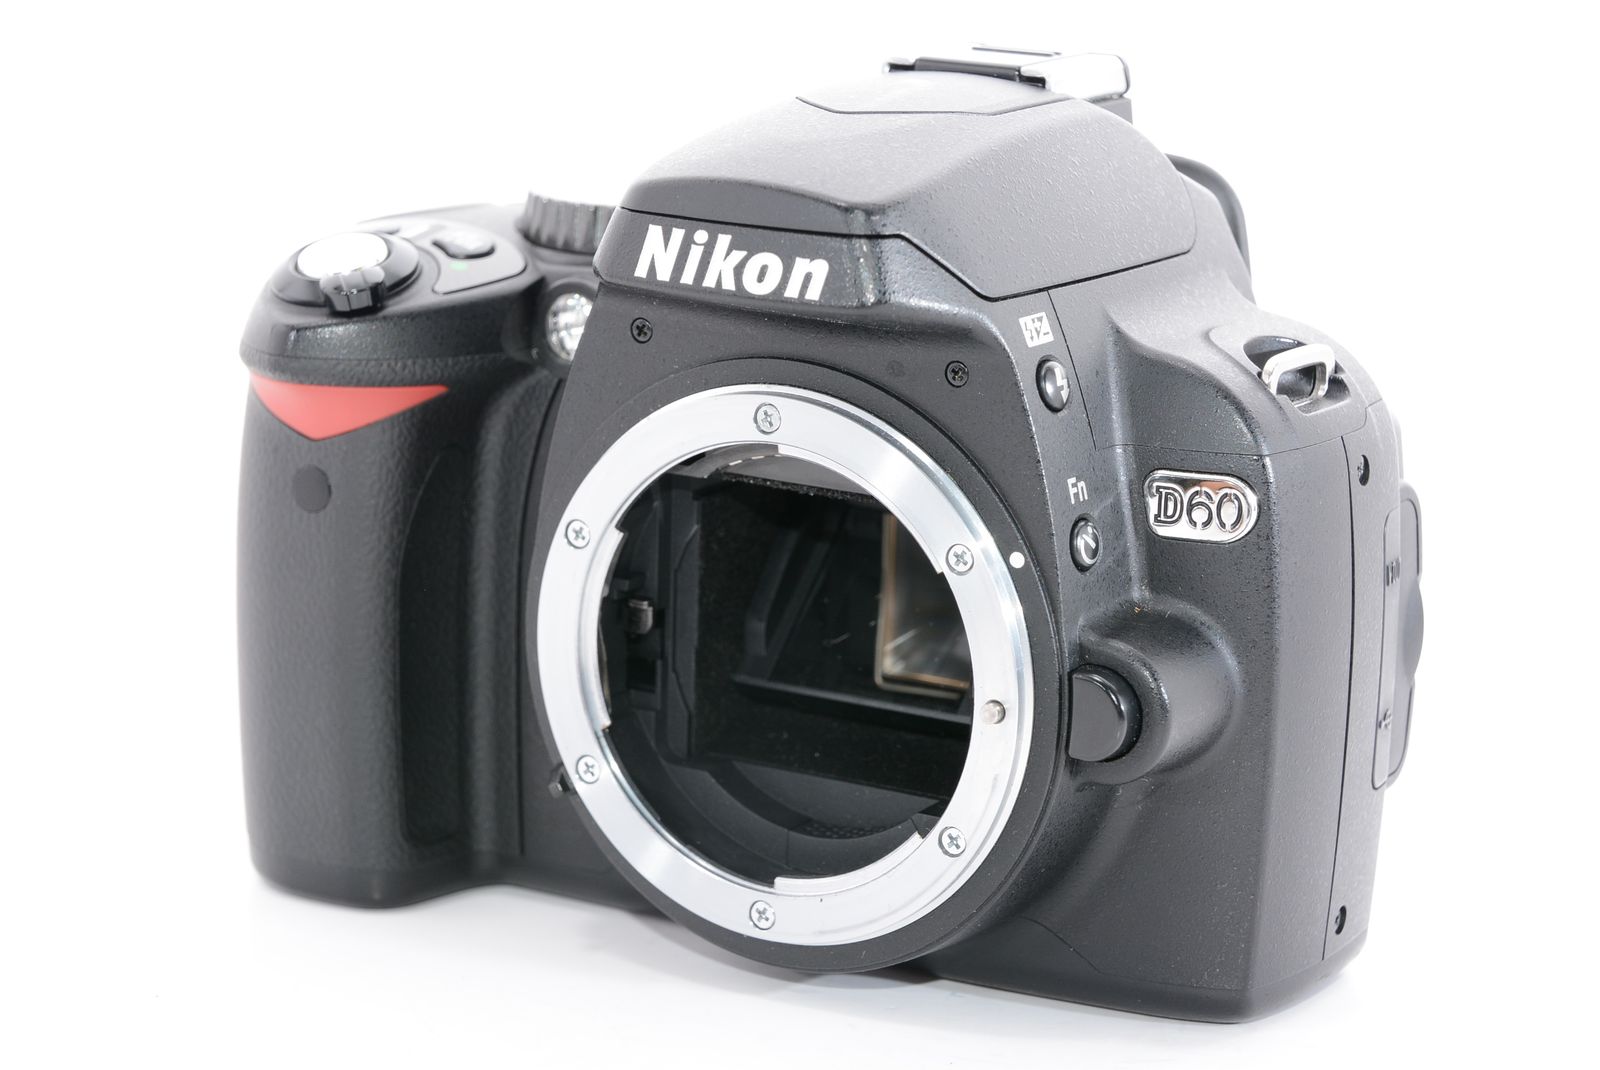 NIKONカメラ D60 - デジタルカメラ